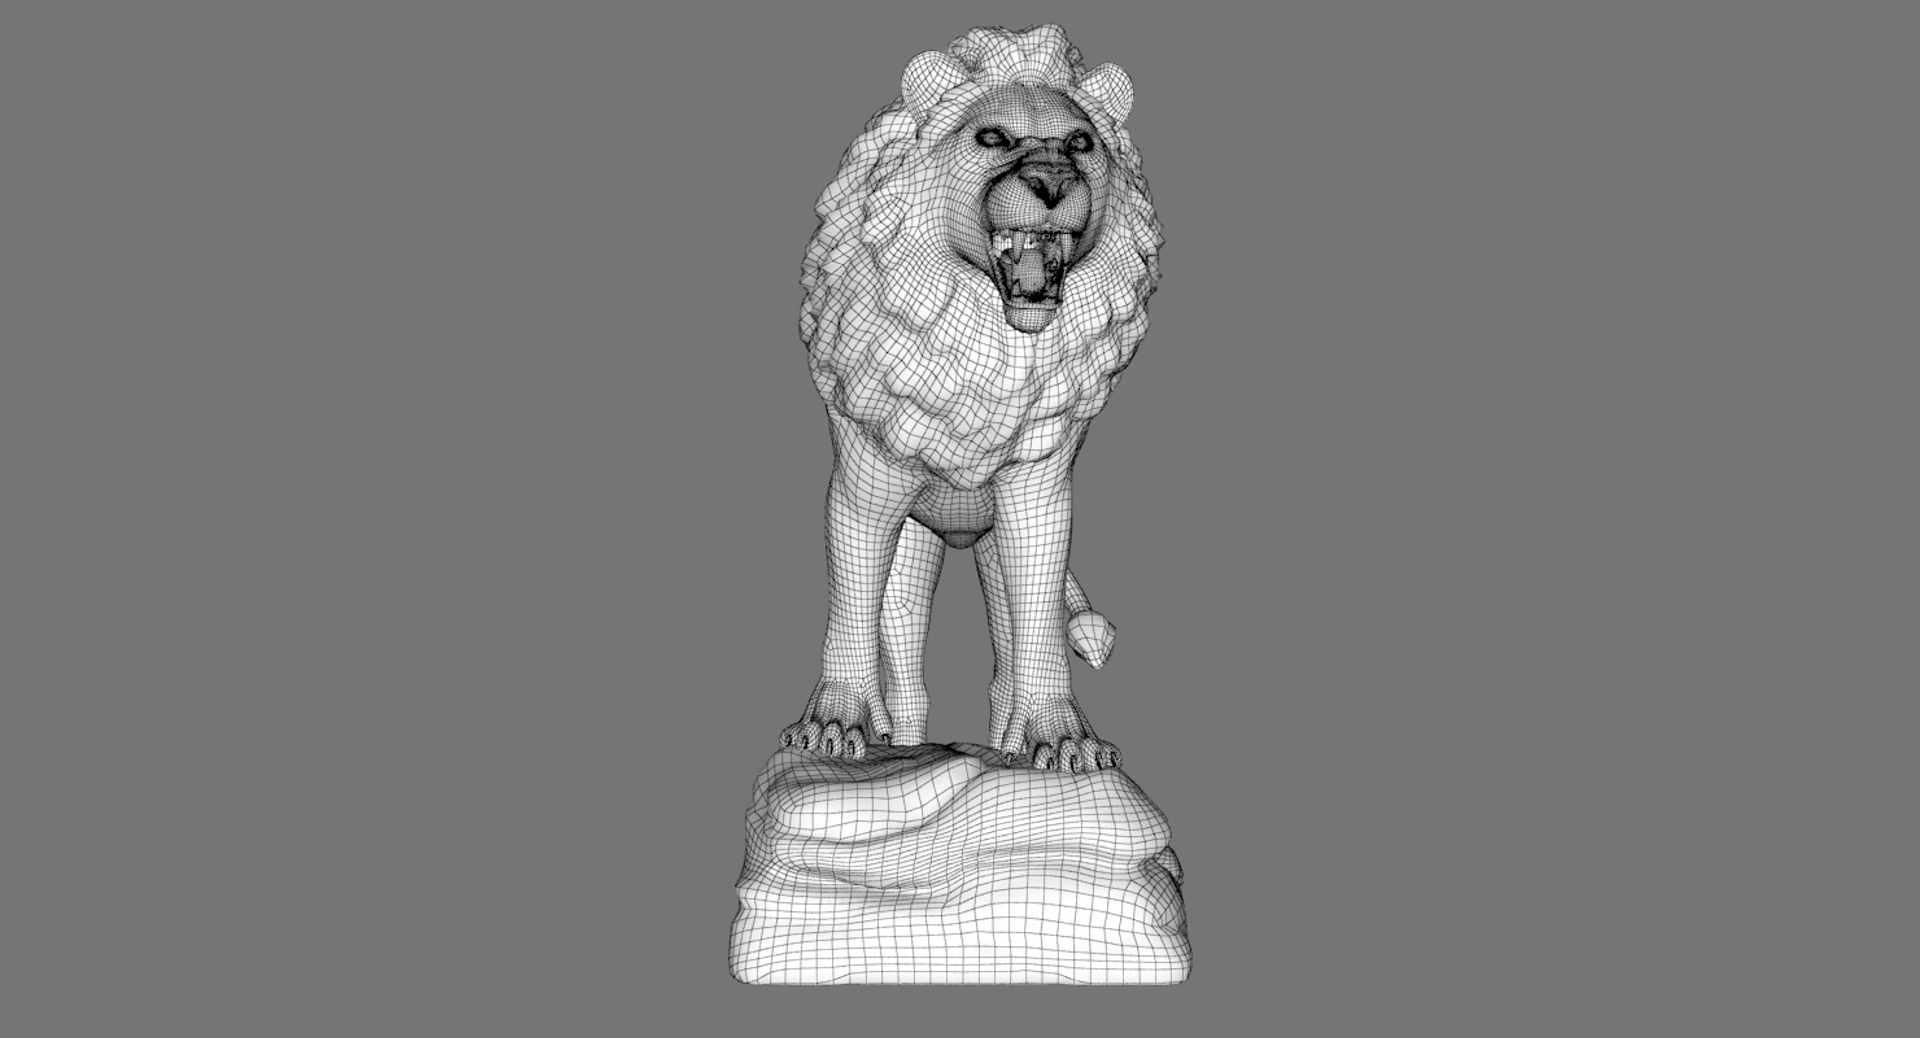 lion statue sculpture 3d ma https://p.turbosquid.com/ts-thumb/nJ/4SSRuv/zF3u233b/turn_w/jpg/1463736098/1920x1080/turn_fit_q99/501c4a05ecf16bb11902abfde5104db95124137e/turn_w-1.jpg